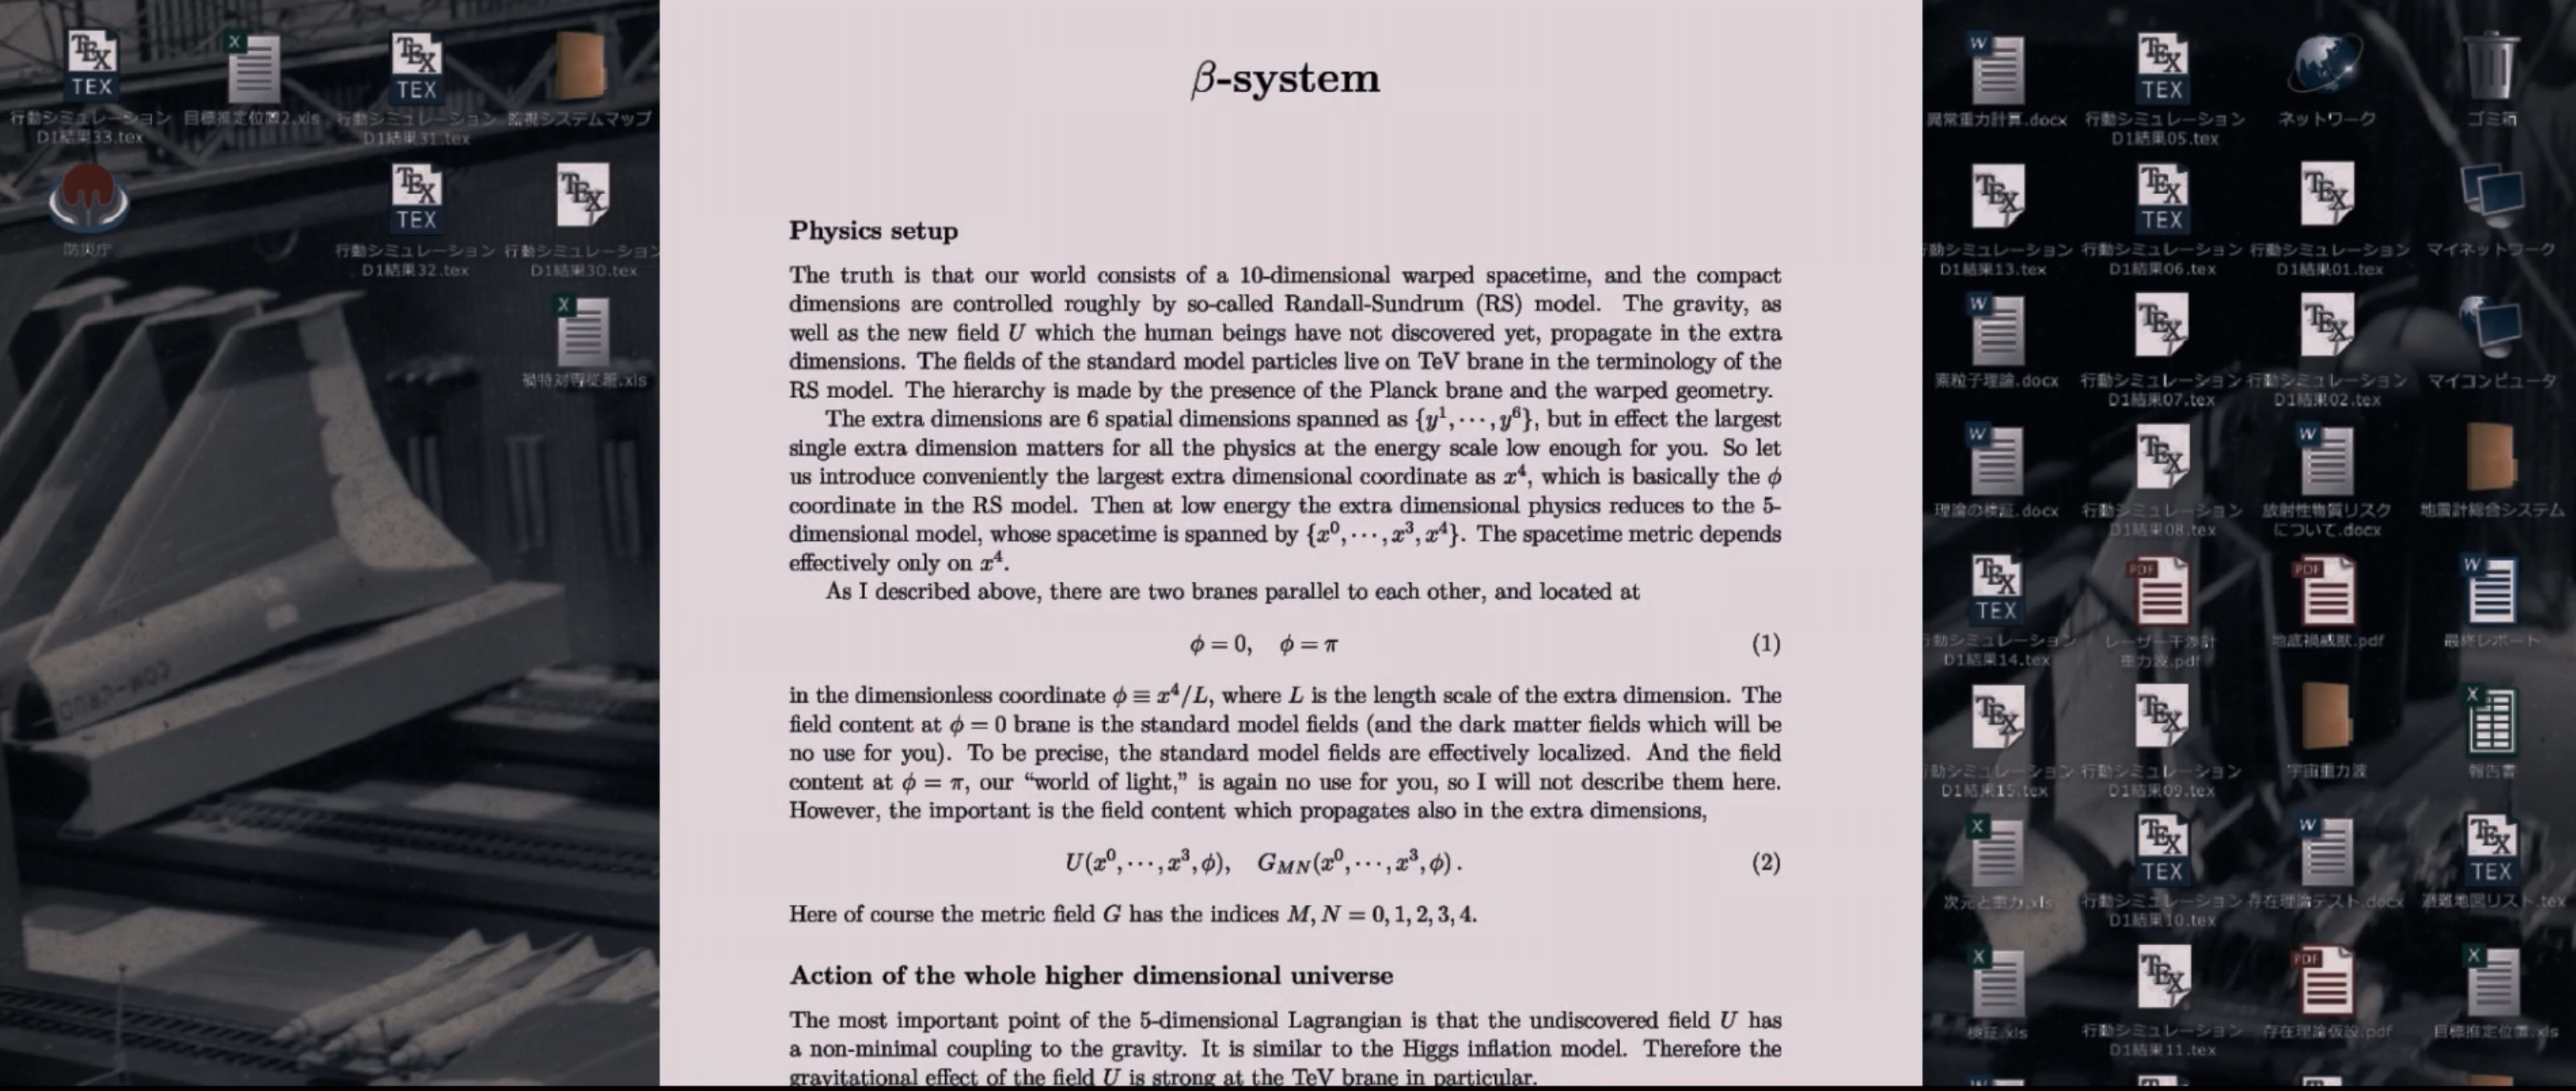 《新·奧特曼》也是庵野秀明給高能物理學者的一封情書